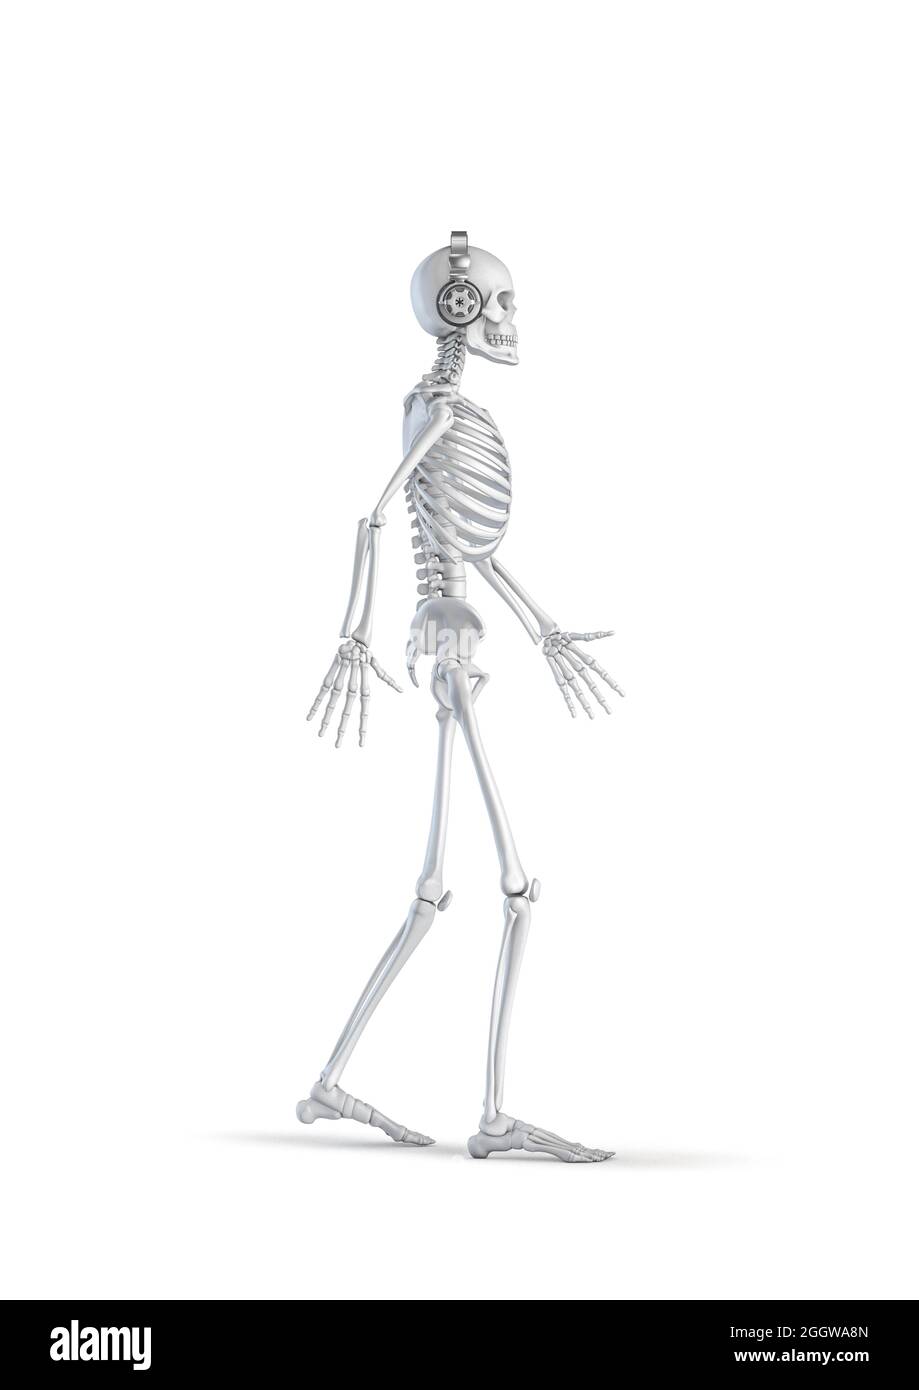 Squelette de casque - illustration 3D du squelette humain masculin marchant et portant un casque stéréo isolé sur fond blanc de studio Banque D'Images